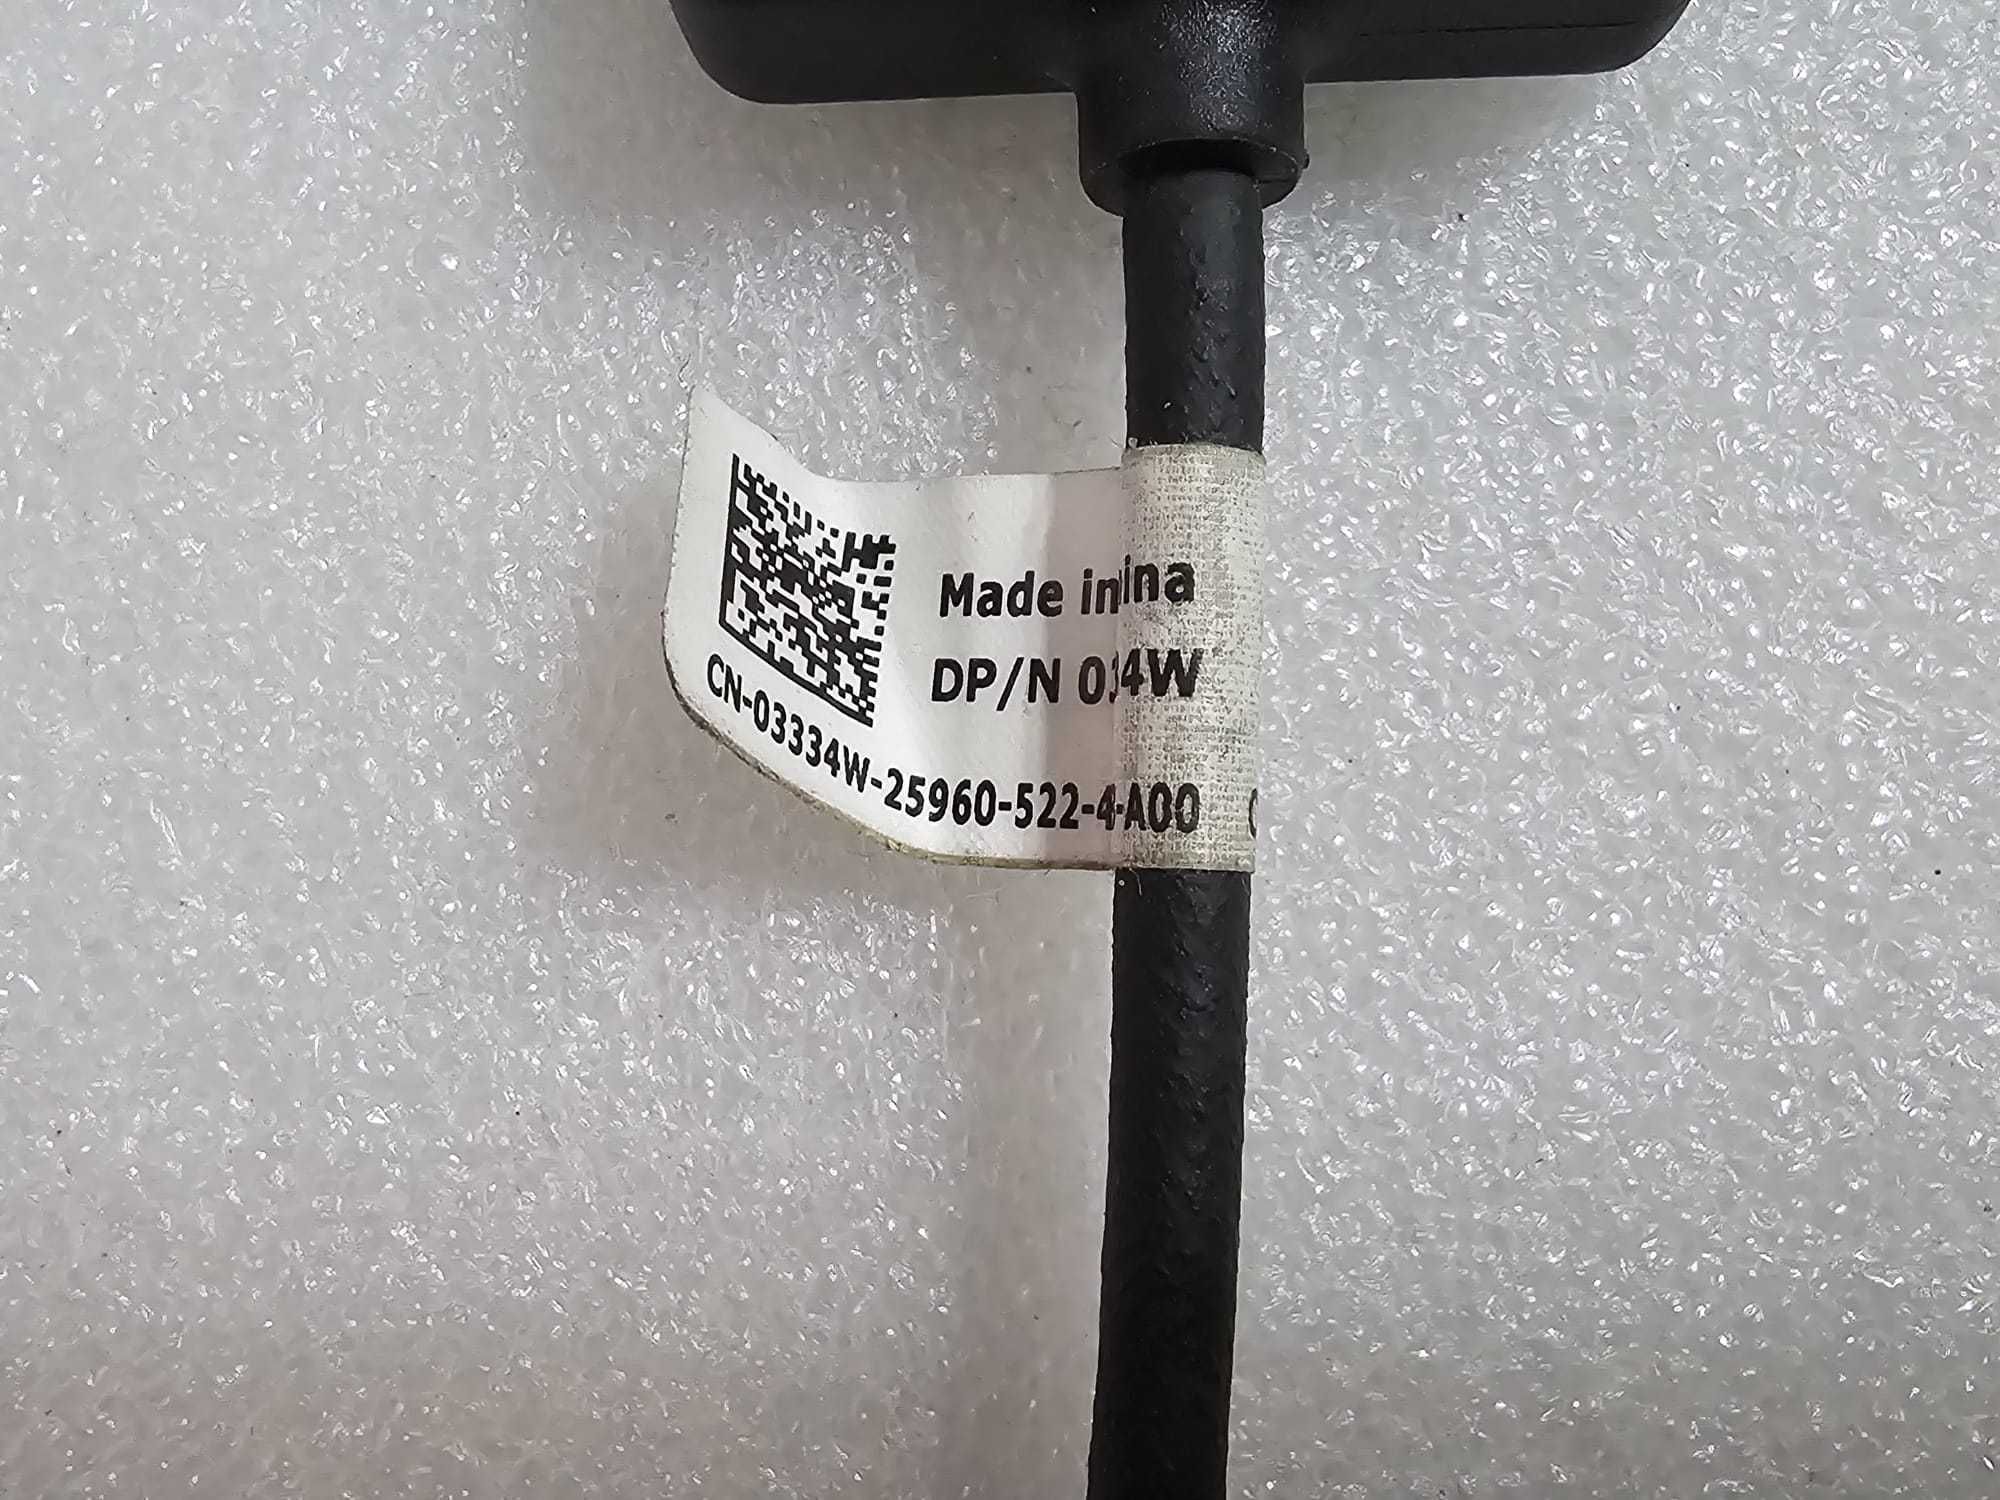 Cablu adaptor original Dell MINI-HDMI la VGA (03334W)